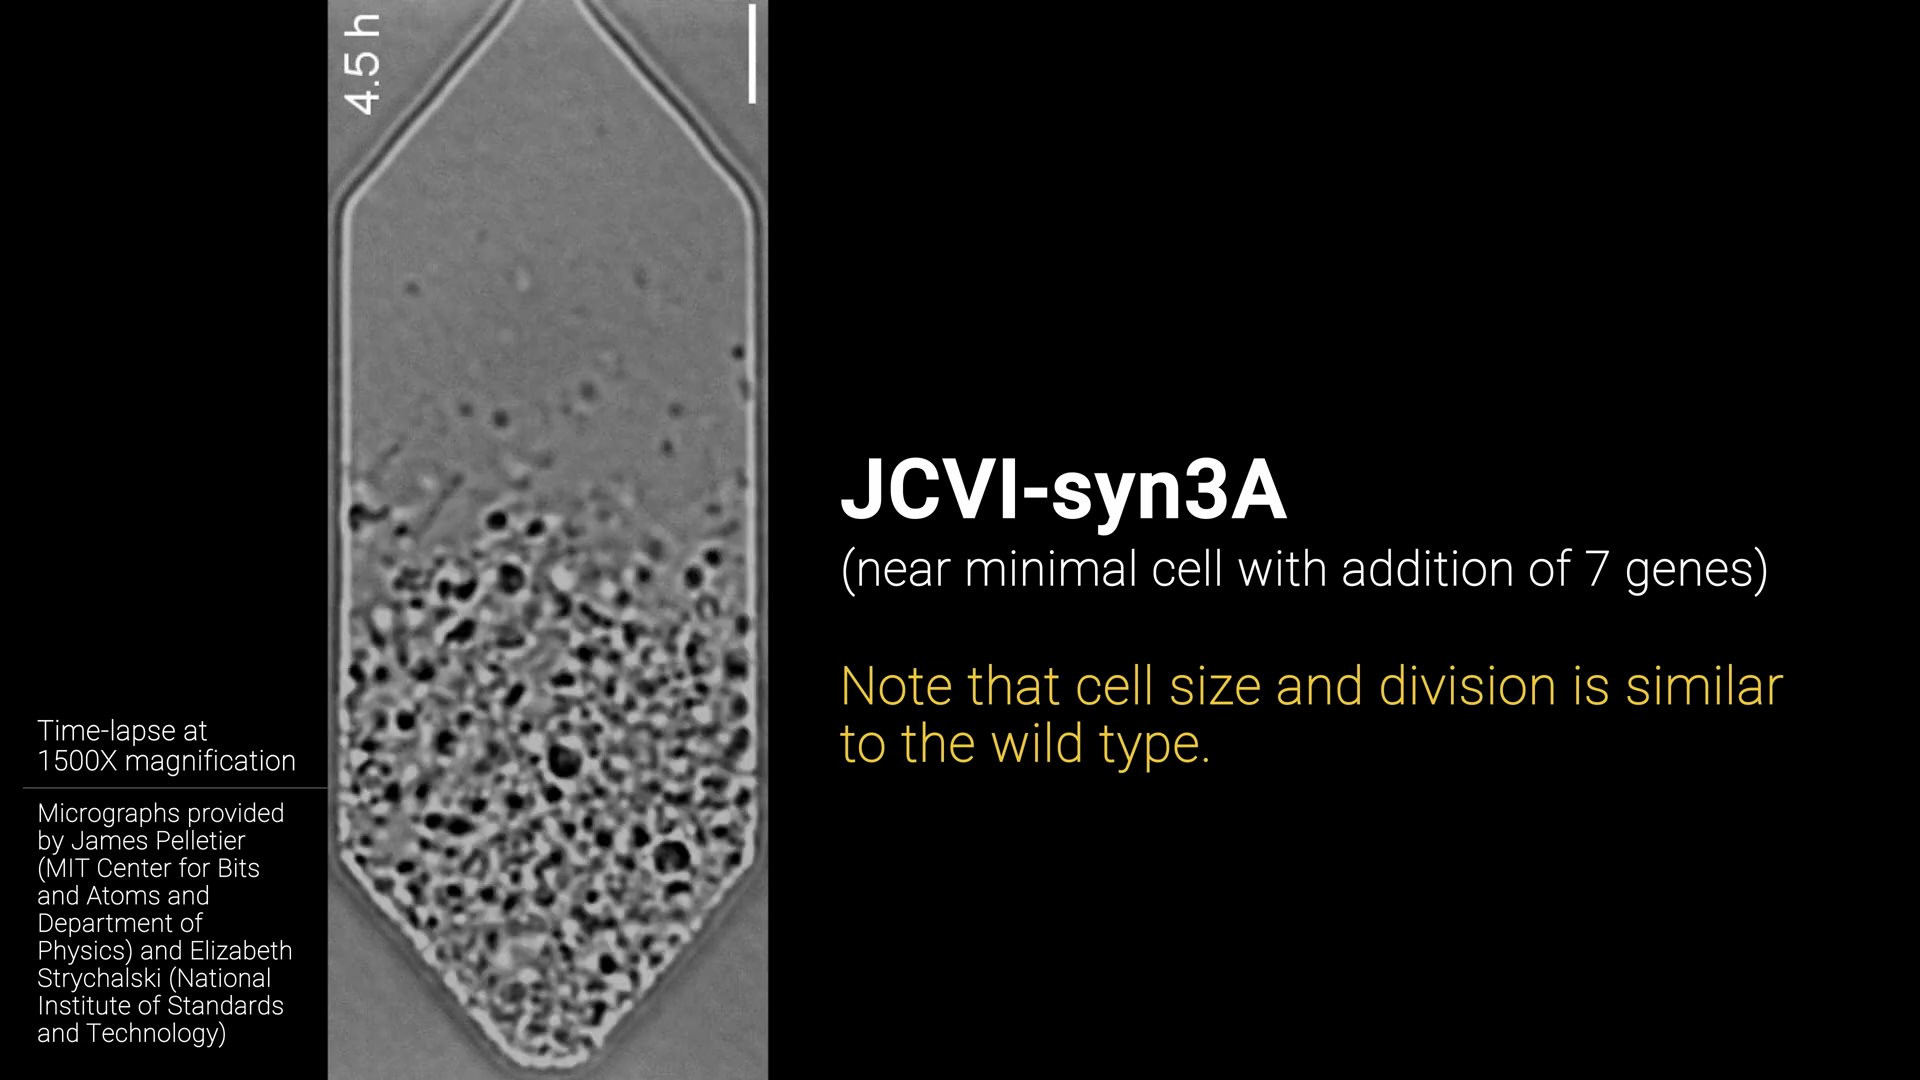 JCVI-syn3A